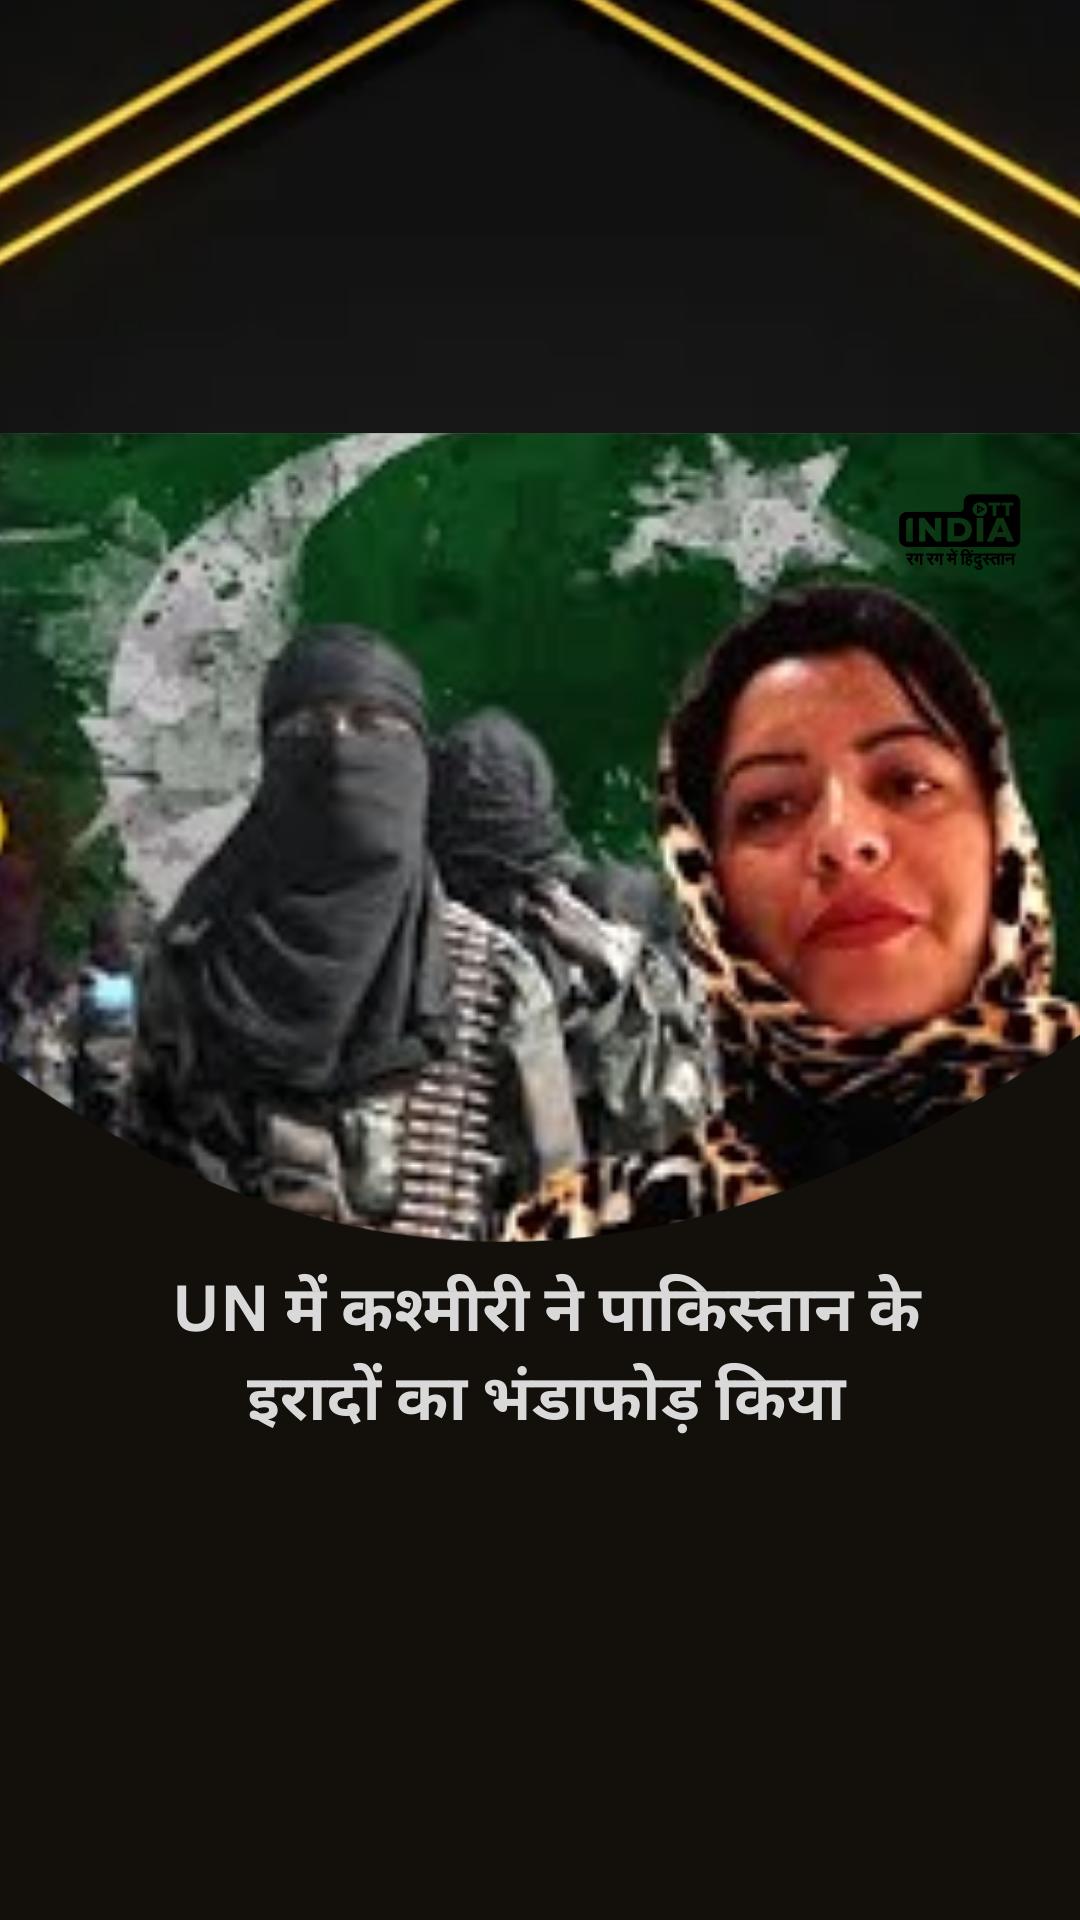 Kashmiri Girl Activist Attacks Pakistan: UN में कश्मीरी Tasleema Akhtar ने पाकिस्तान के इरादों का भंडाफोड़ किया